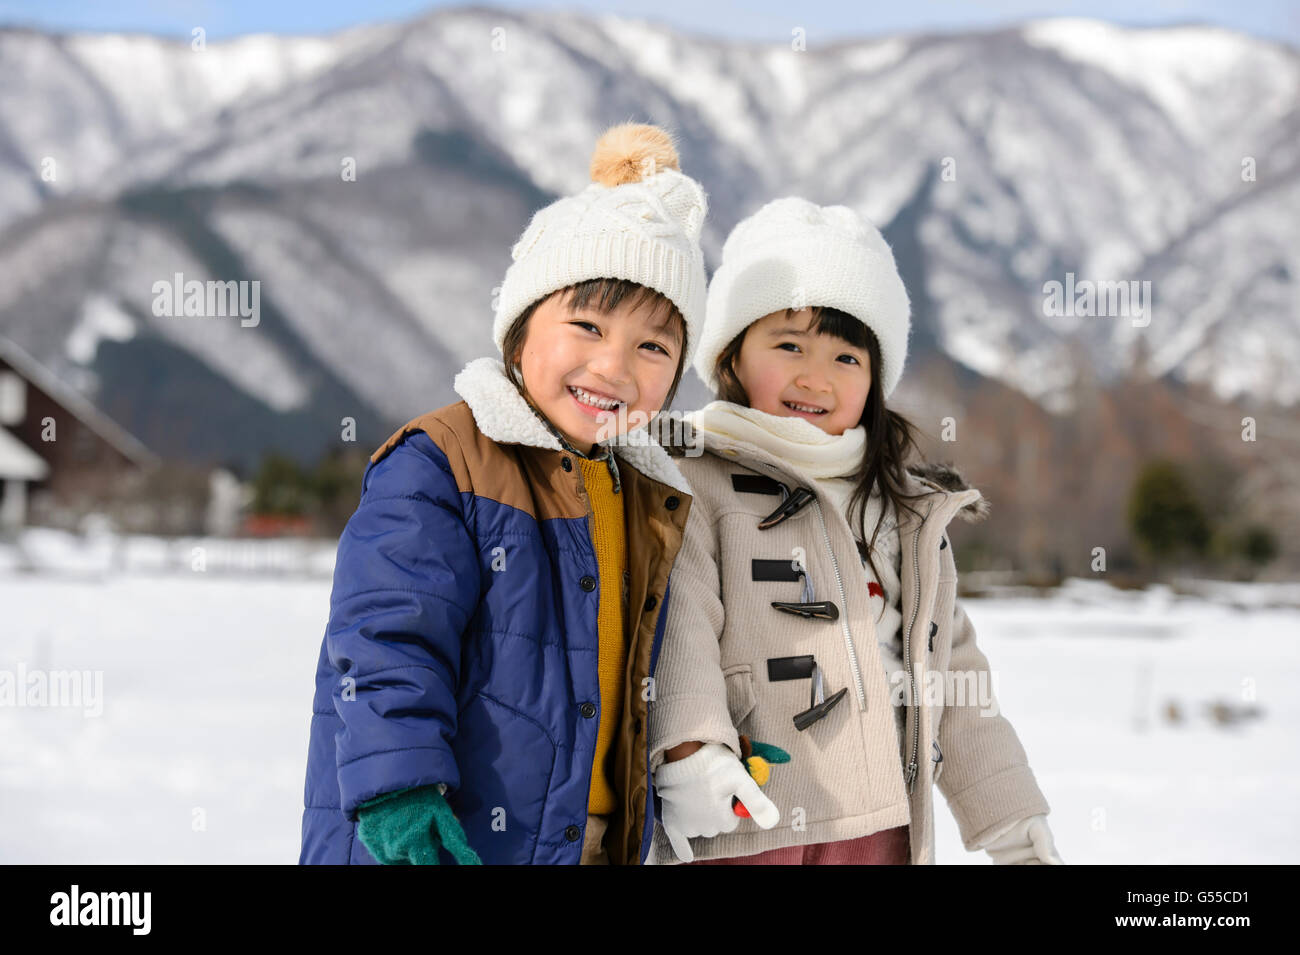 Les enfants jouant dans la neige Banque D'Images